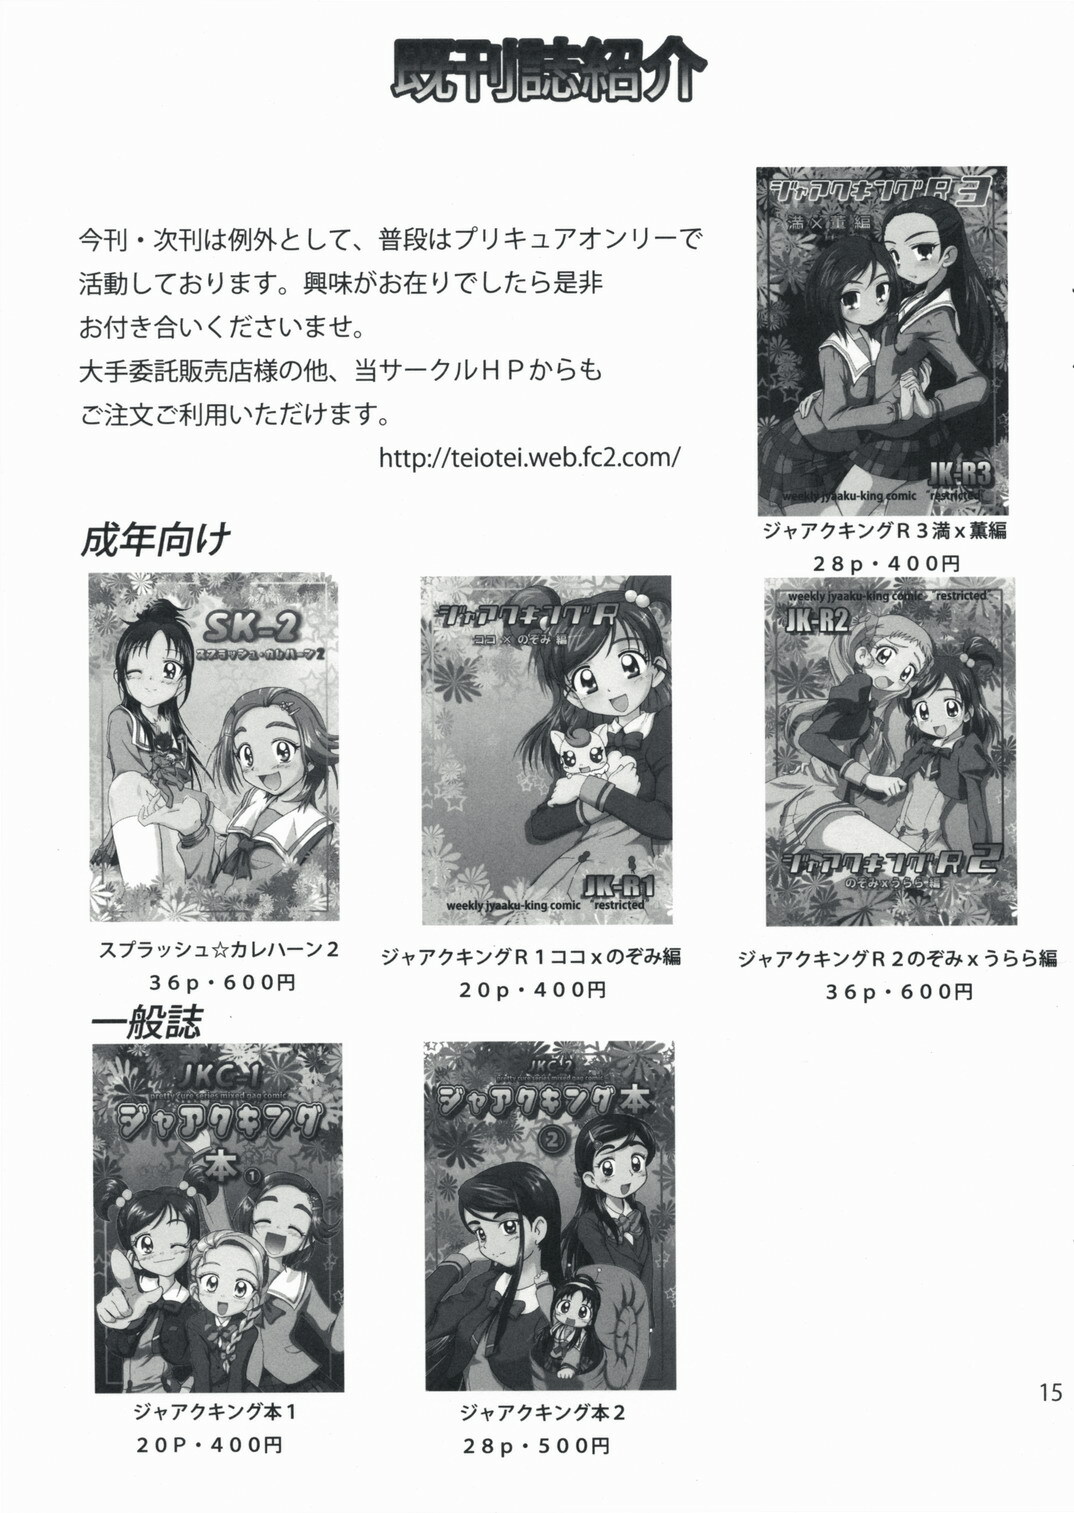 (SC40) [Teio Tei (Teio Tei Teio)] Shokushu x Rydia 2008 Otameshiban - Tentacle x Rydia 2008 Pilot Style (Final Fantasy IV) [English] page 15 full